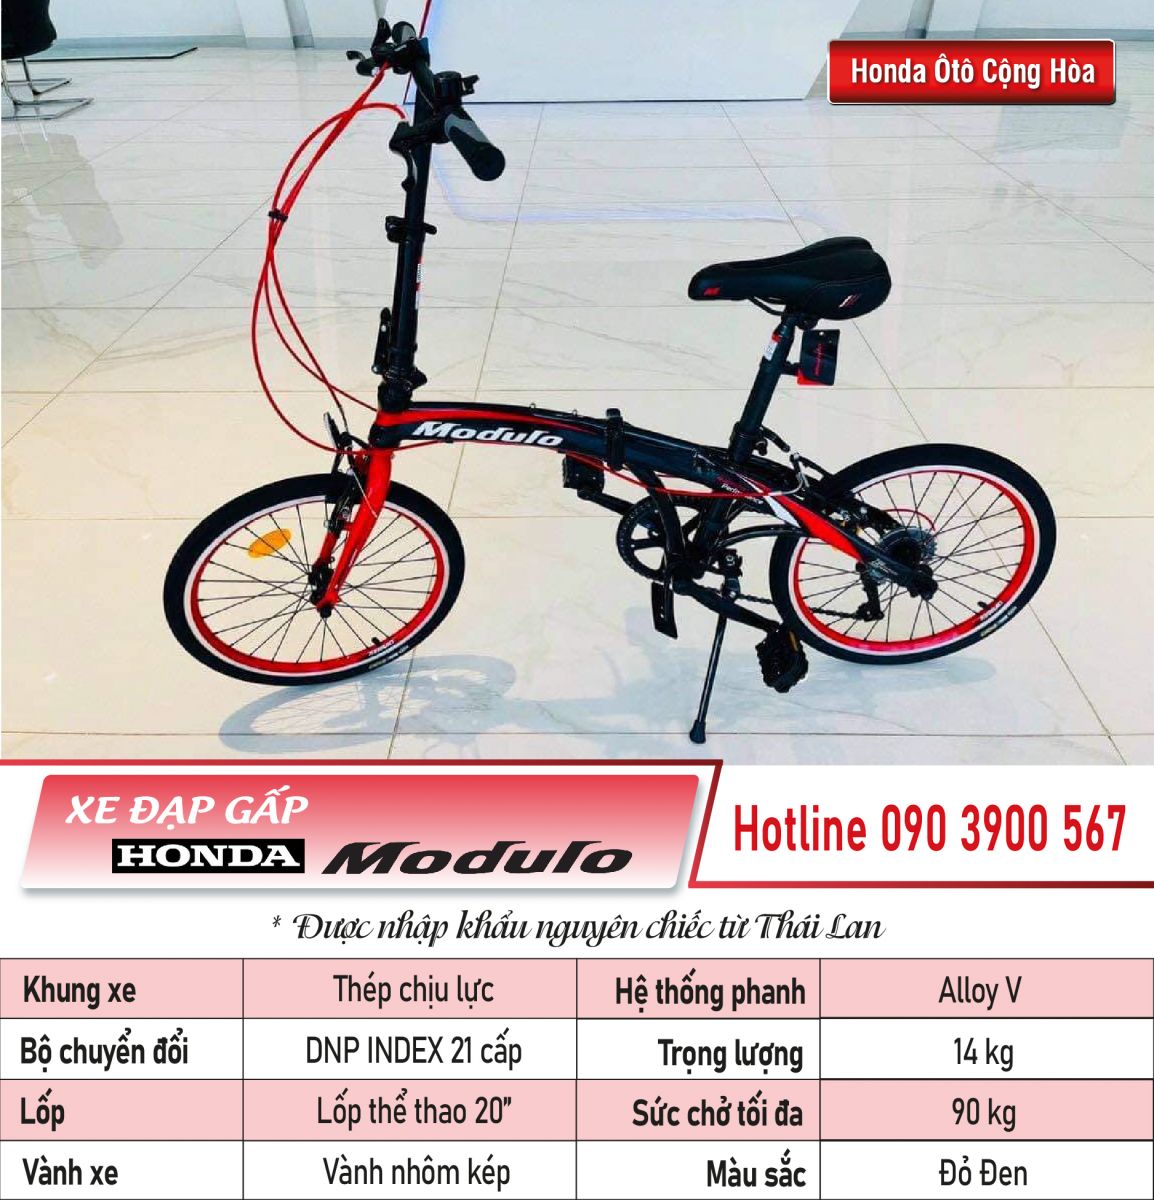 Xe đạp gấp honda modulo 2021 màu đen viền đỏ  Shopee Việt Nam